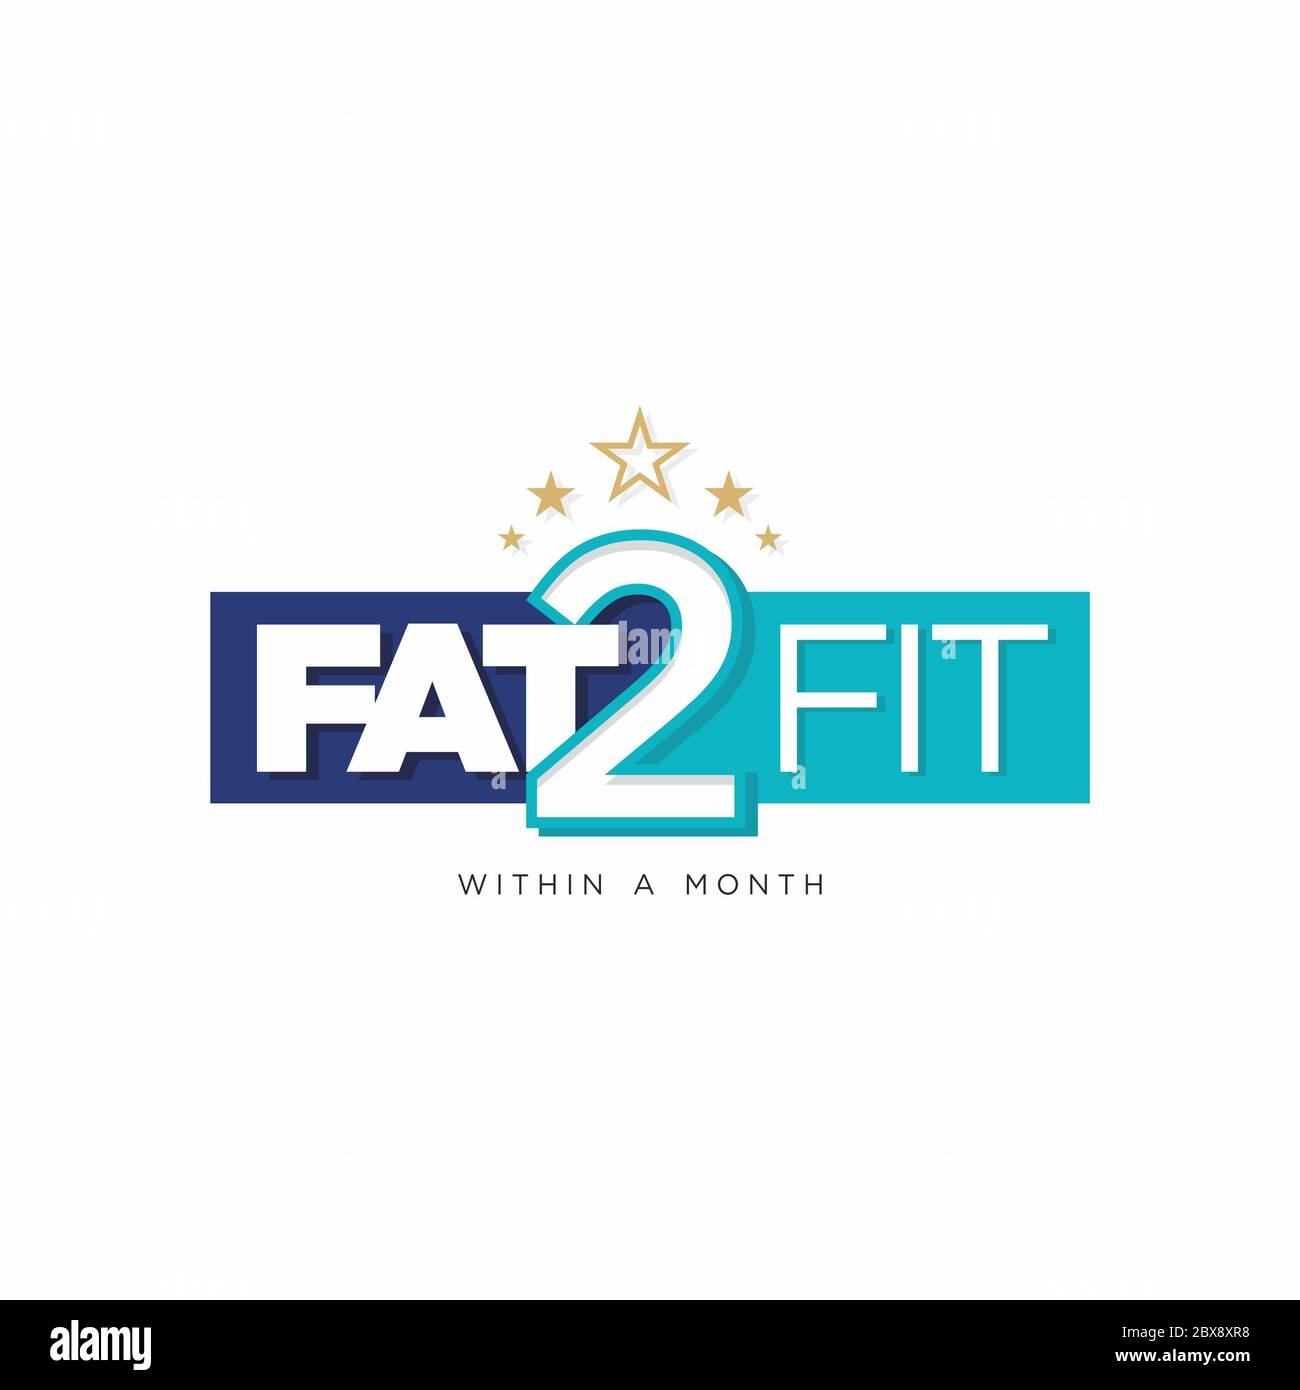 FAT 2 Fit dans un mois - logo Illustration | Devis motivationnel | étiquette pour la salle de gym ou le centre de yoga Banque D'Images